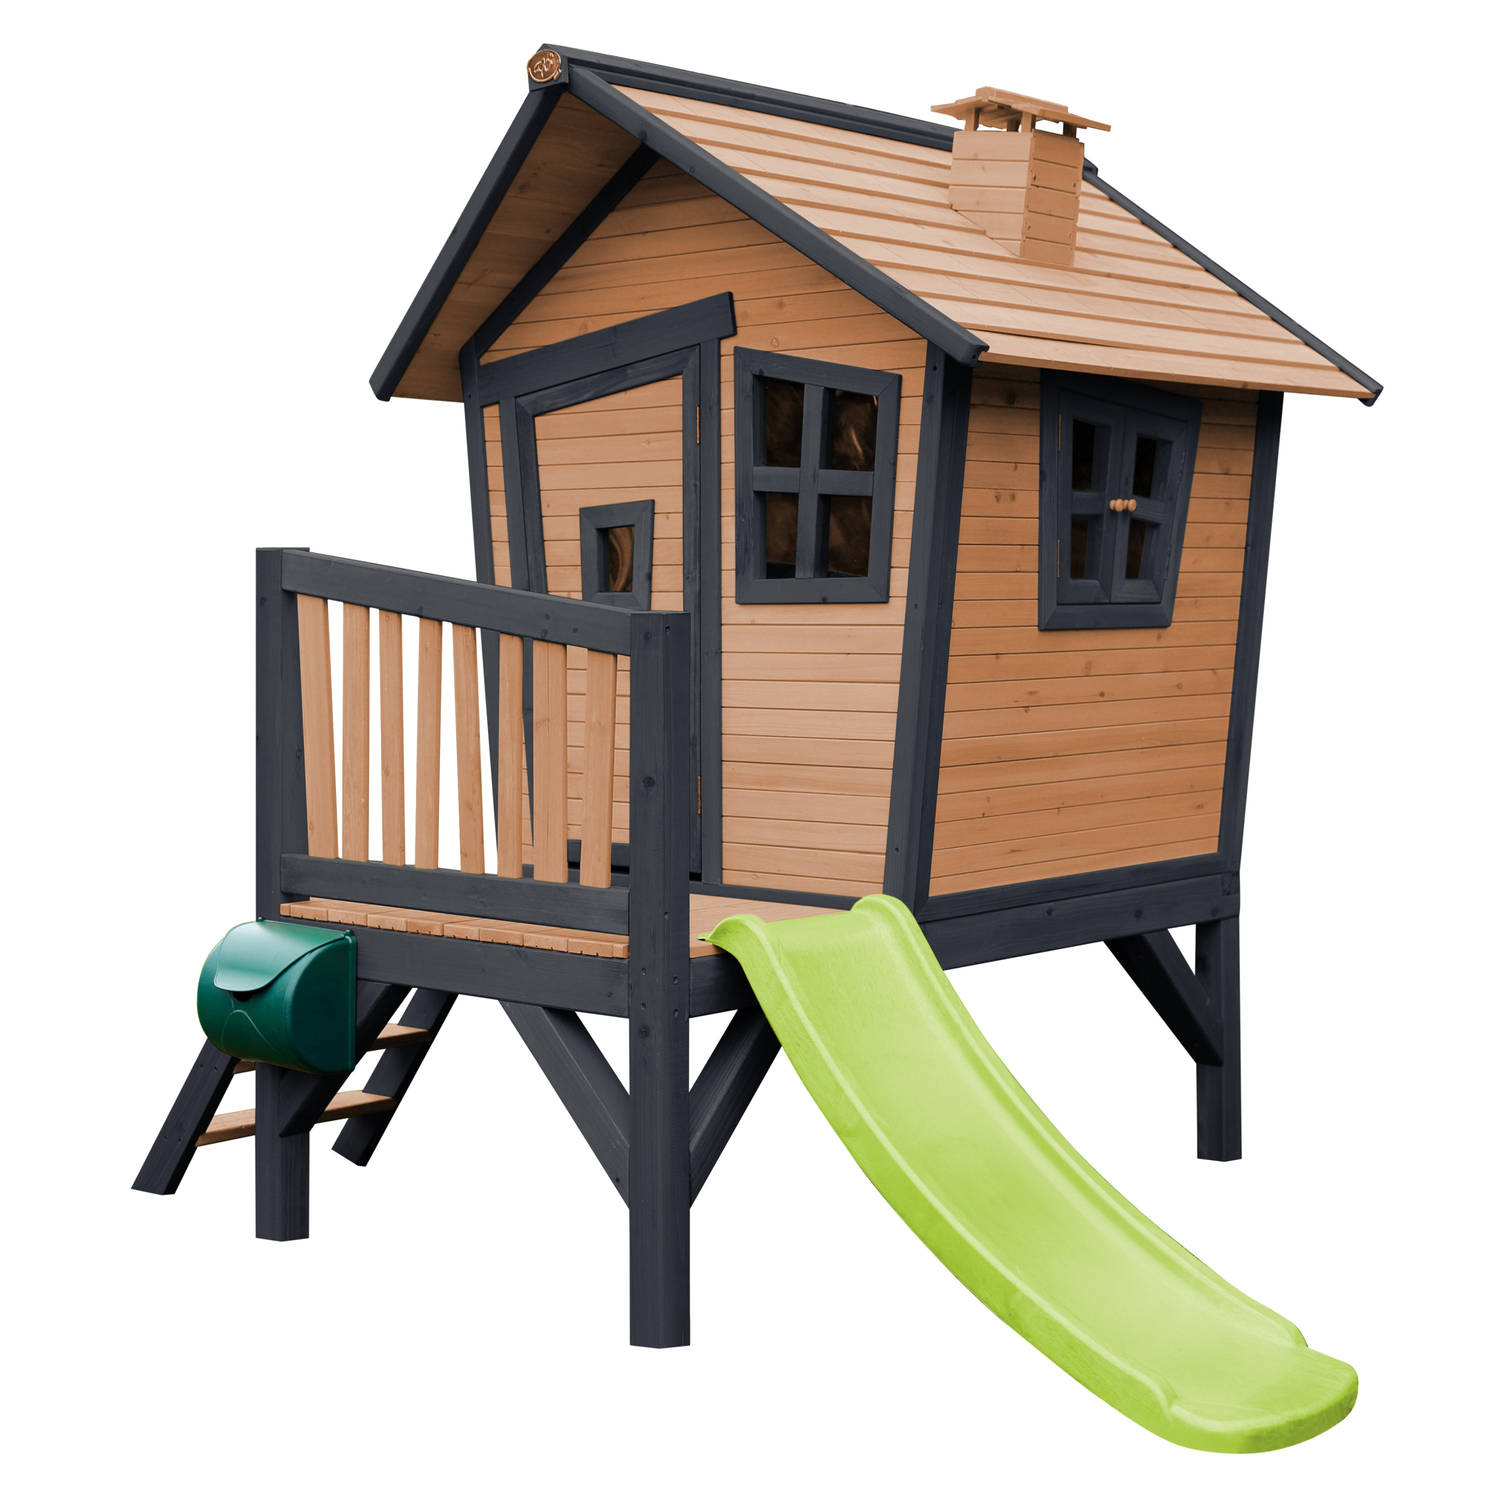 AXI Robin Speelhuis op palen & limoen groene glijbaan Speelhuisje voor de tuin / buiten in antraciet & wit van FSC